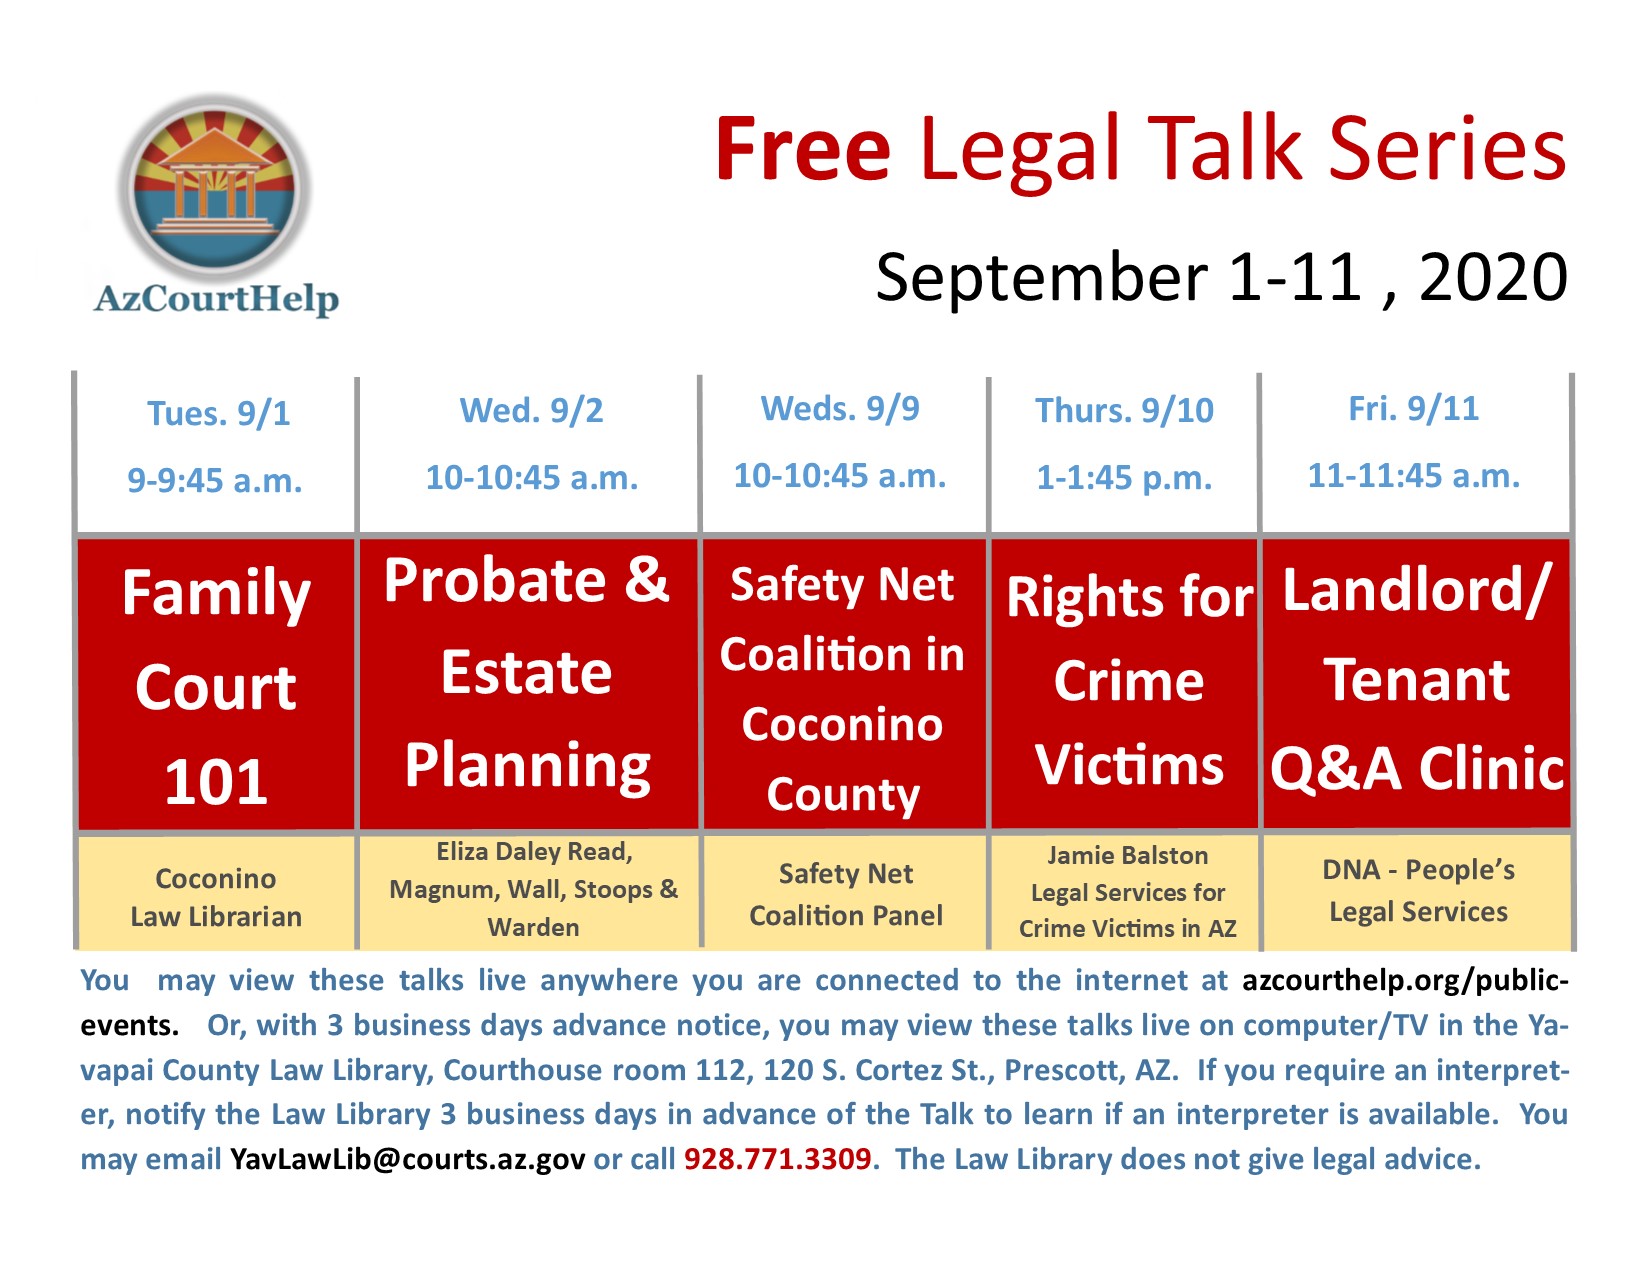 Poster of Legal Talks September 1-11, 2020.